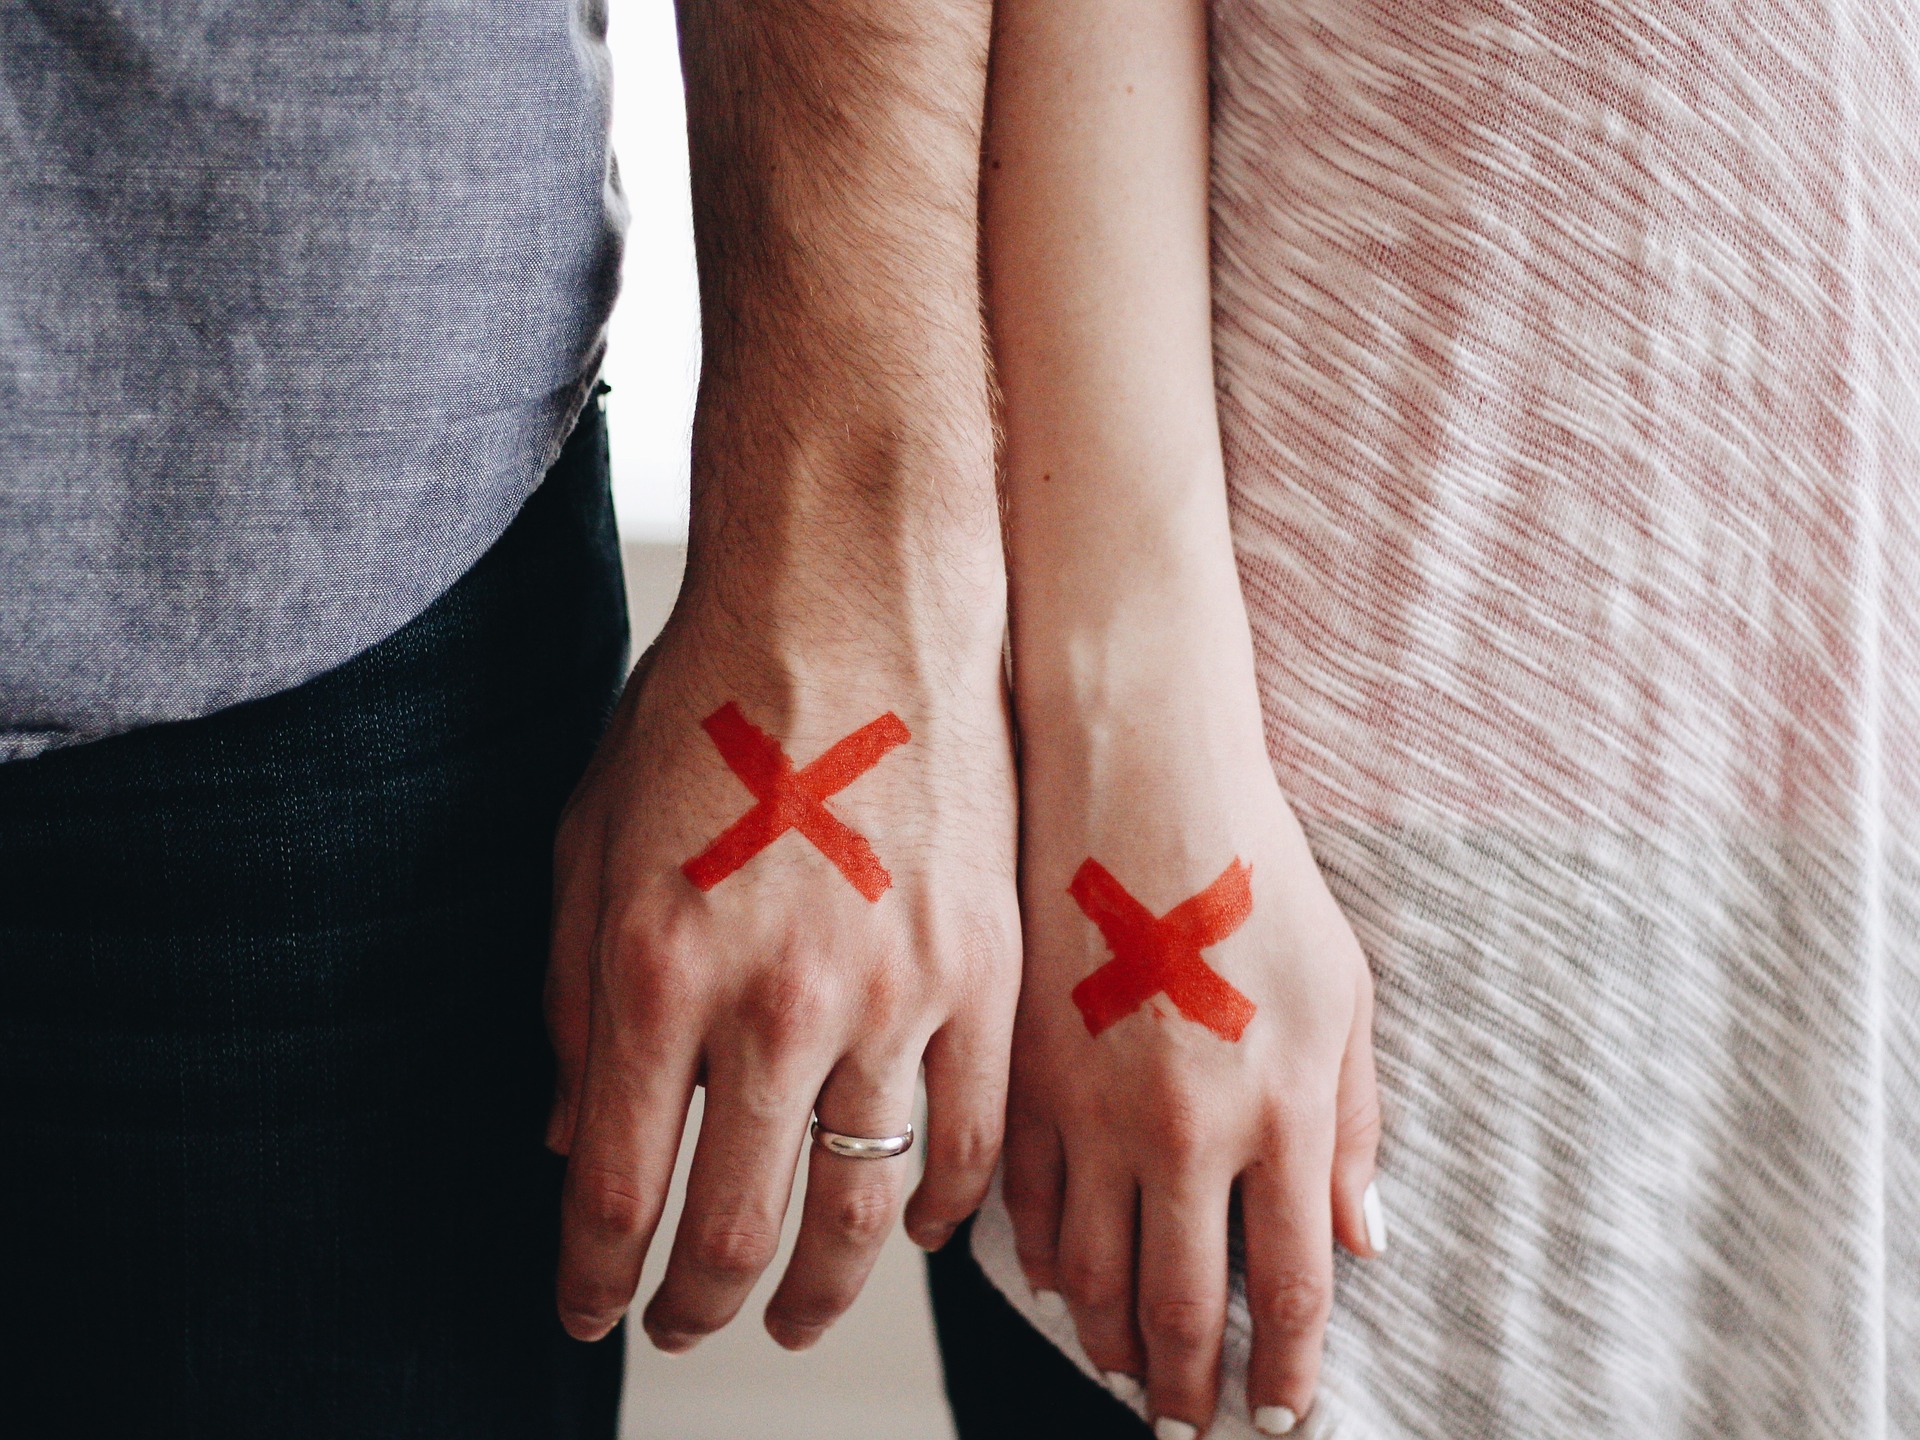 dłonie mężczyzny i kobiety, na każdej z nich namalowany czerwony krzyżyk - symbol rozwodu